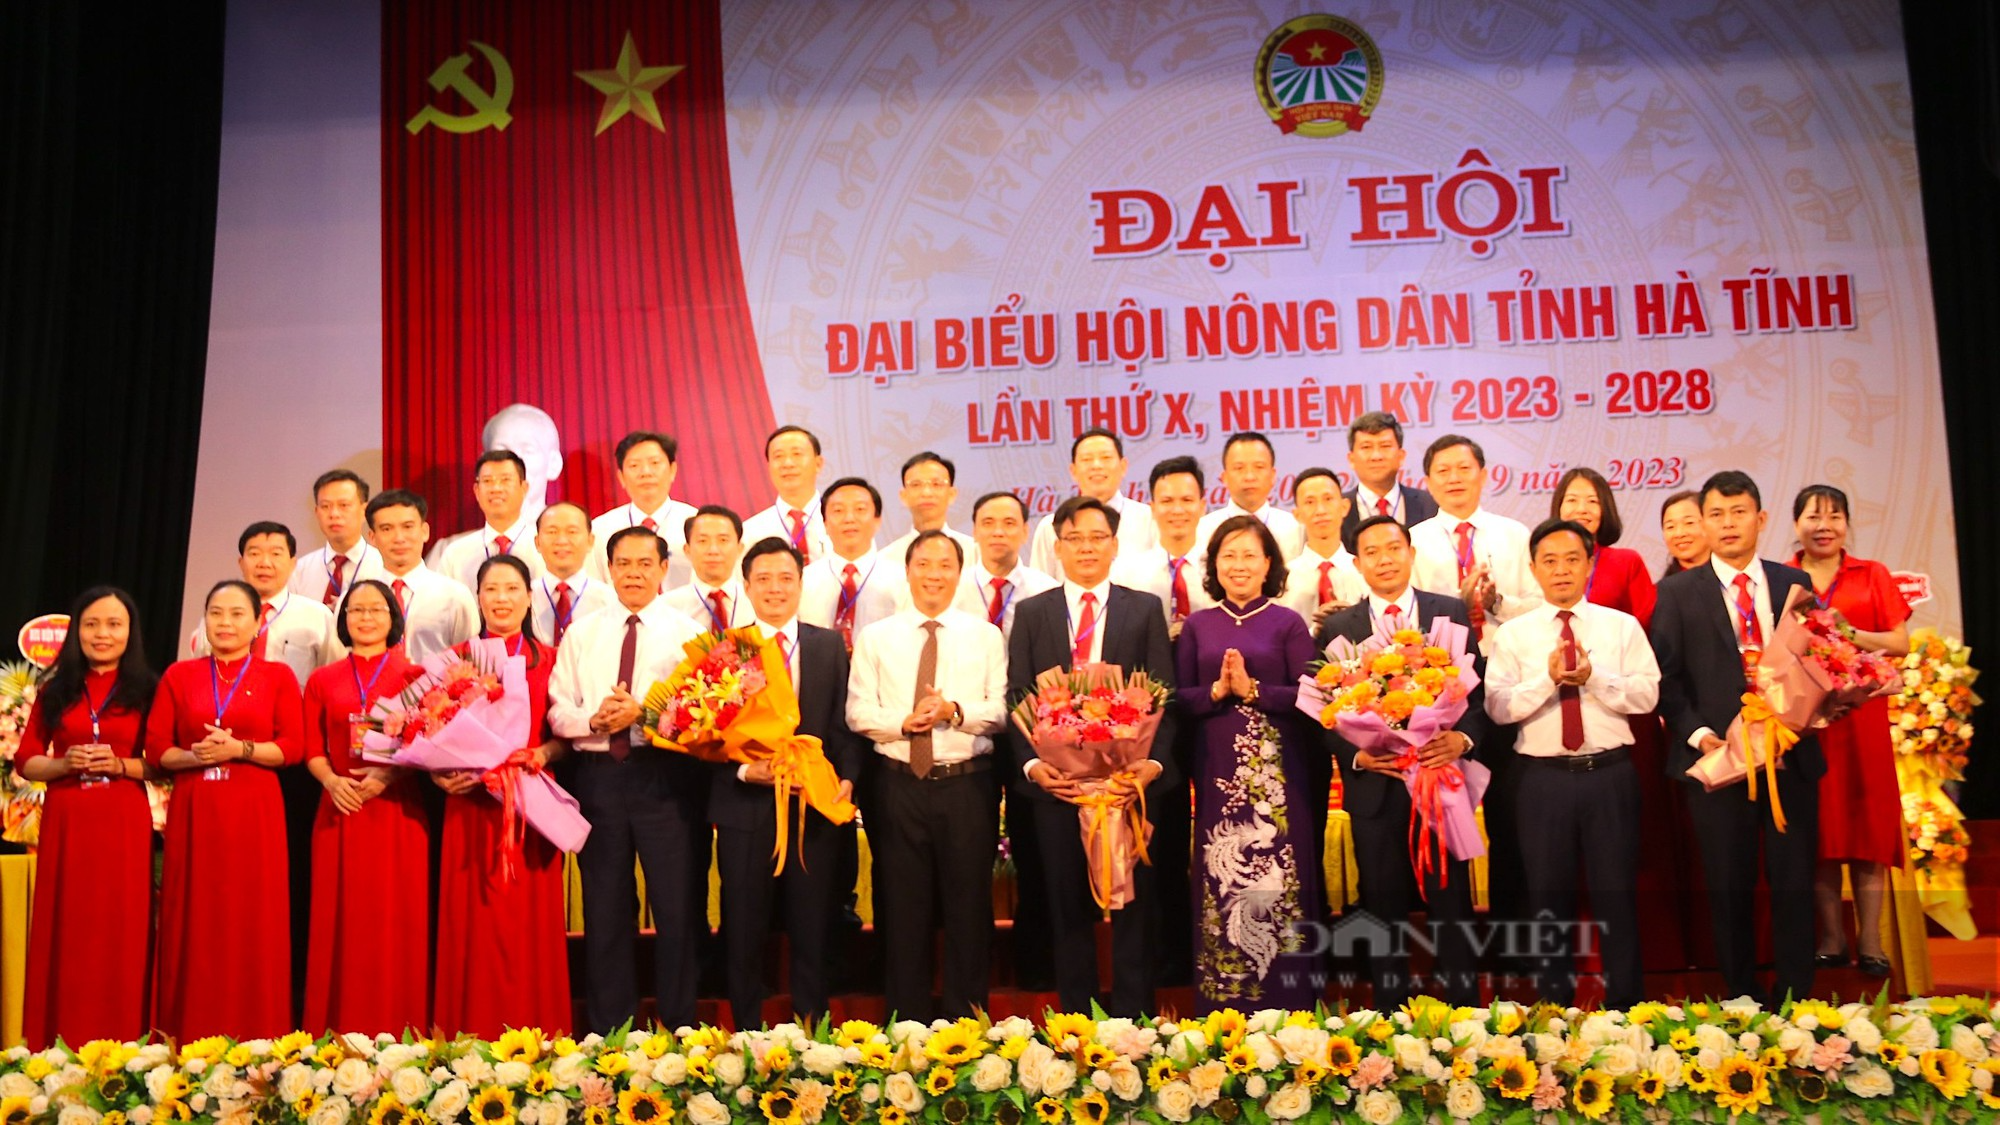 Phó Chủ tịch Hội NDVN Bùi Thị Thơm: Hà Tĩnh có nhiều cách làm hay, mô hình tốt về xây dựng nông thôn mới- Ảnh 8.